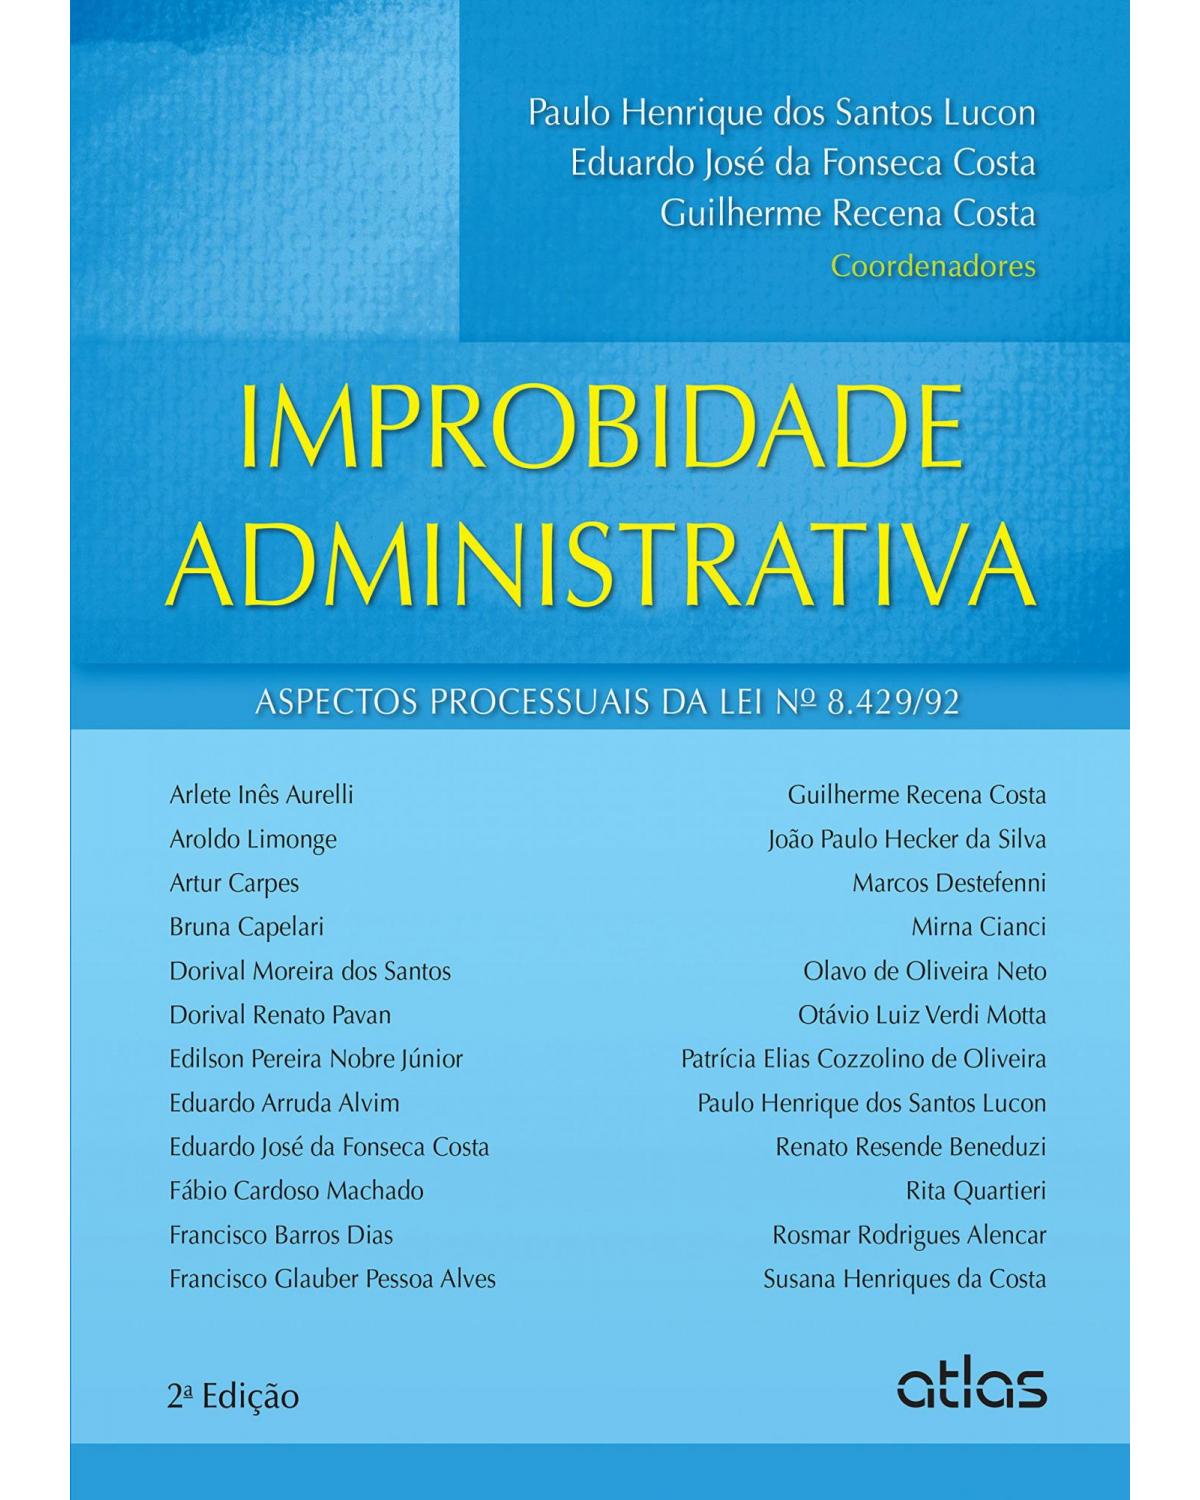 Improbidade administrativa - Aspectos processuais da lei nº 8.429/92 - 2ª Edição | 2015